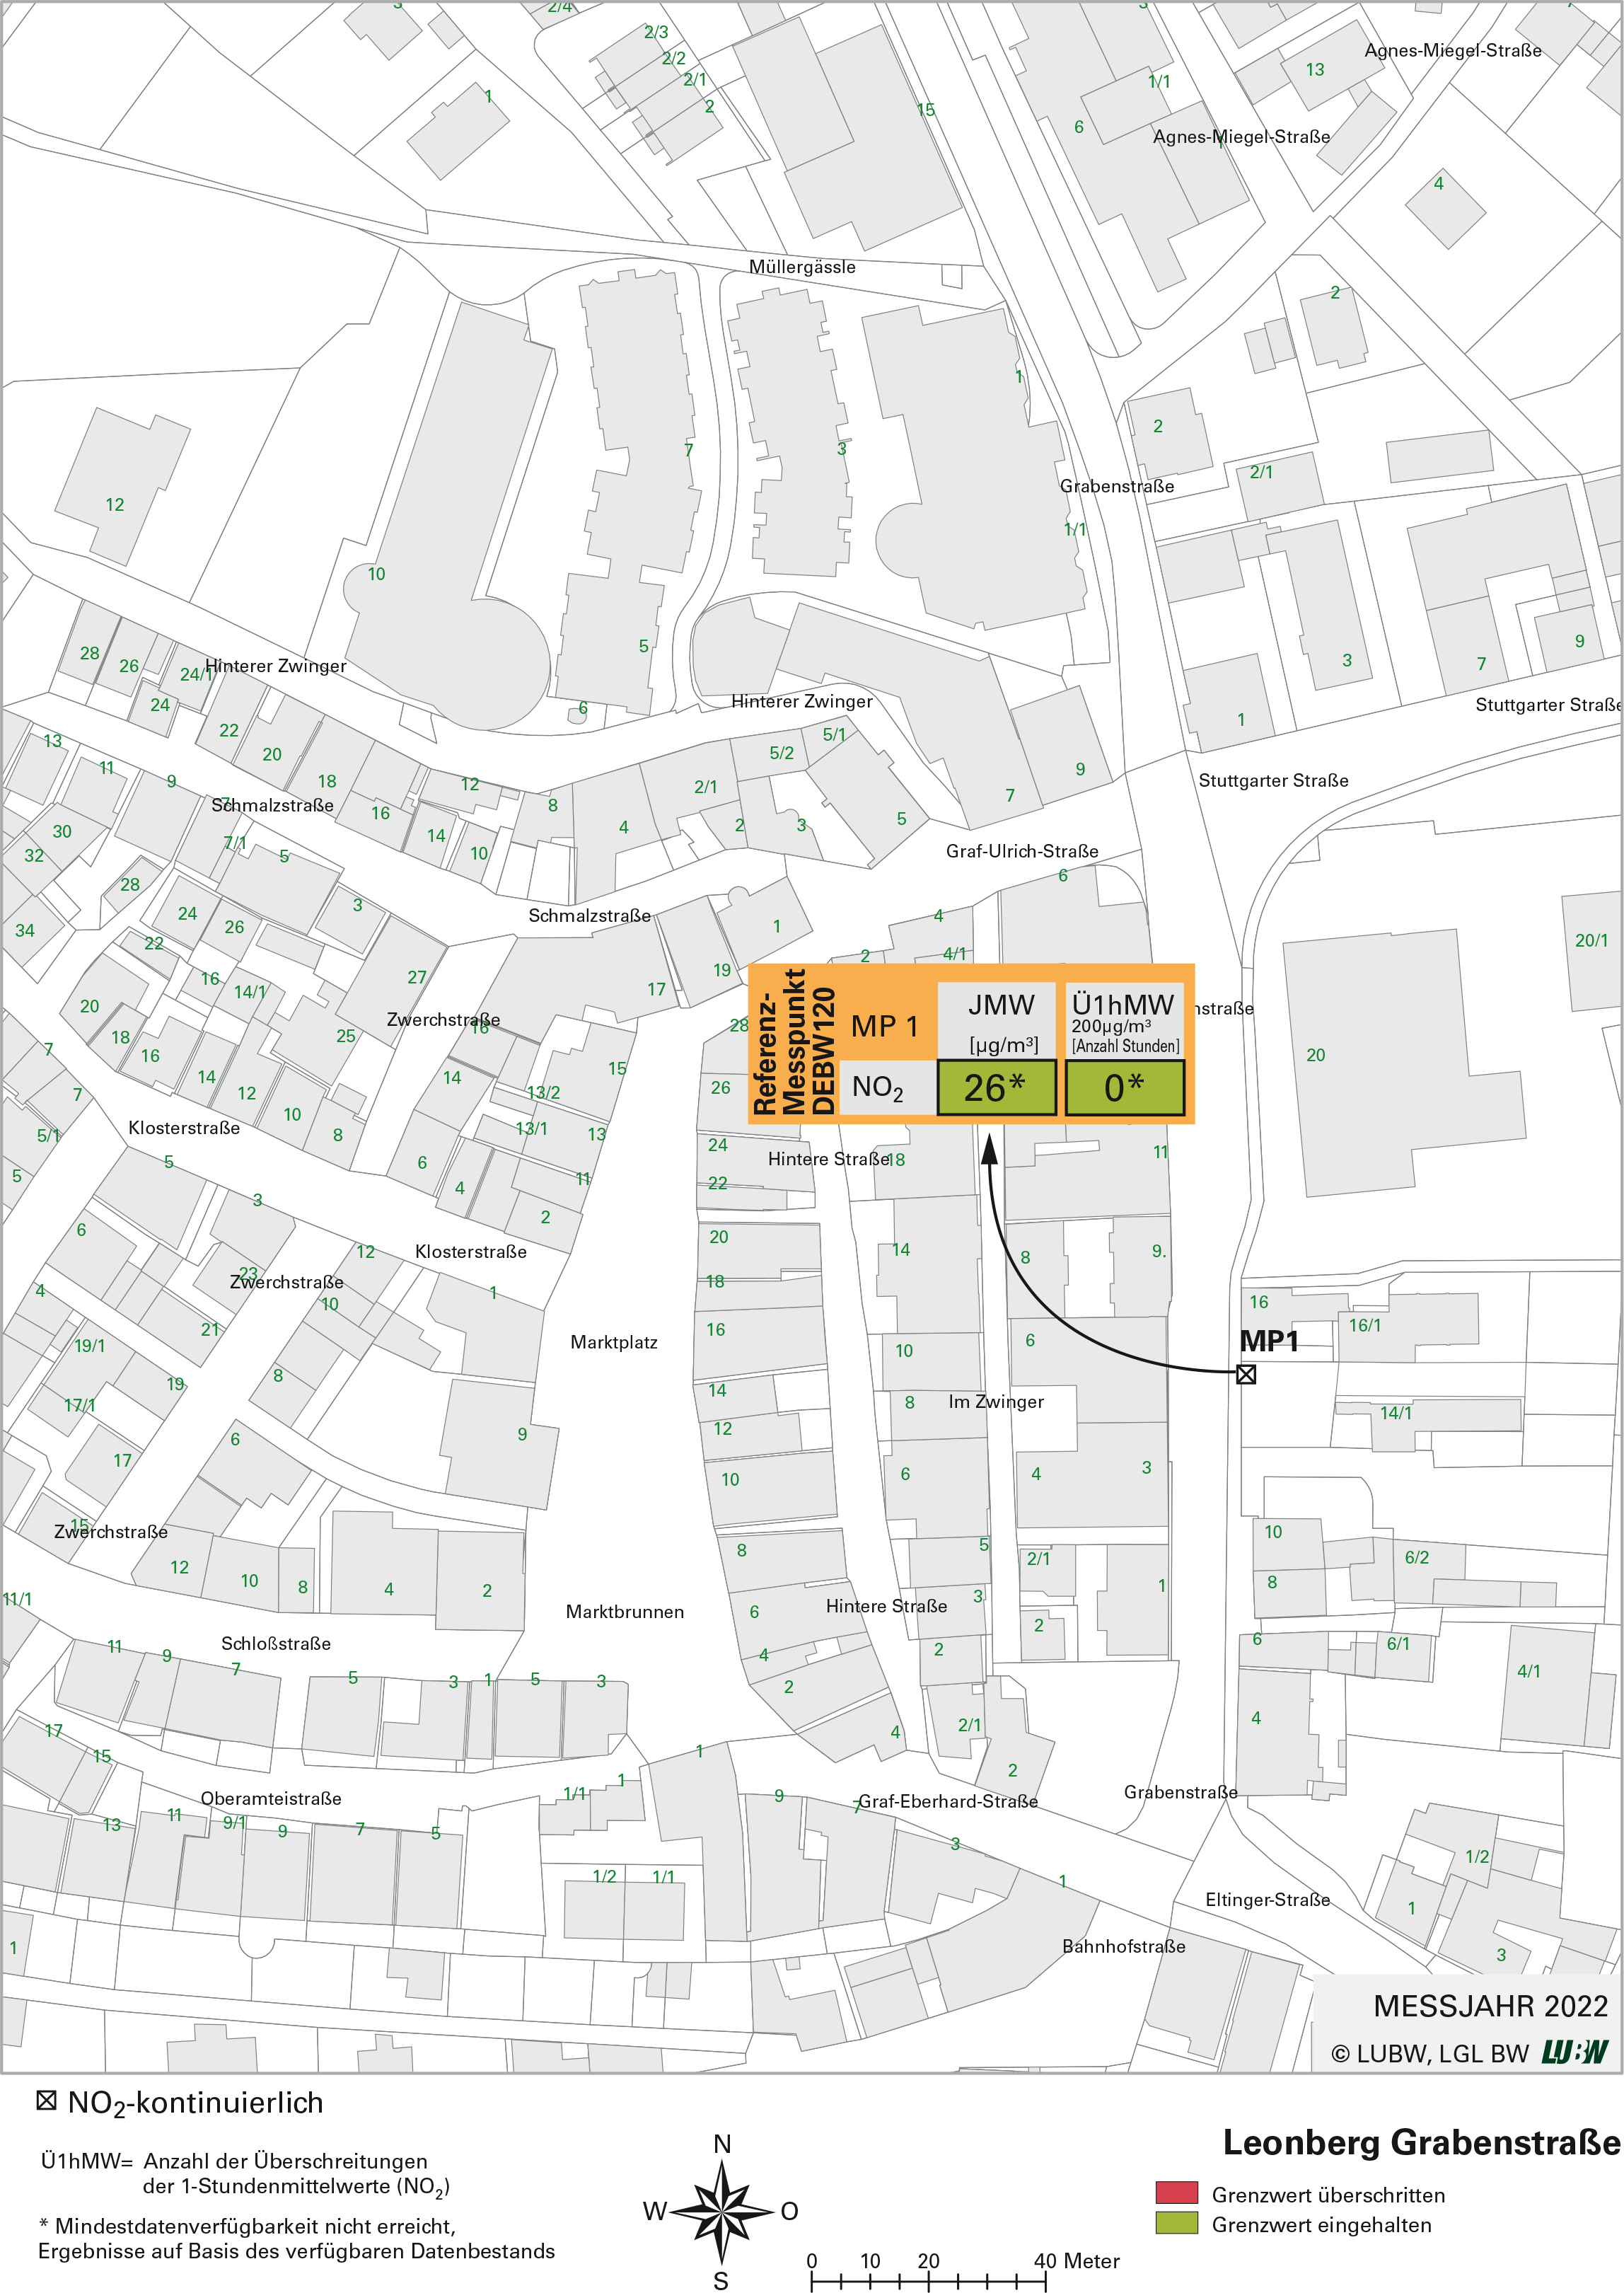 Kartenausschnitt, der die Lage der Messstelle Leonberg Grabenstraße (Referenzmesspunkt) zeigt. Dargestellt sind zudem die Ergebnisse auf Basis des verfügbaren Datenbestandes (Jahresmittelwert 2022, Überschreitung 2022) der gemessenen Stickstoffdioxidbelastung.